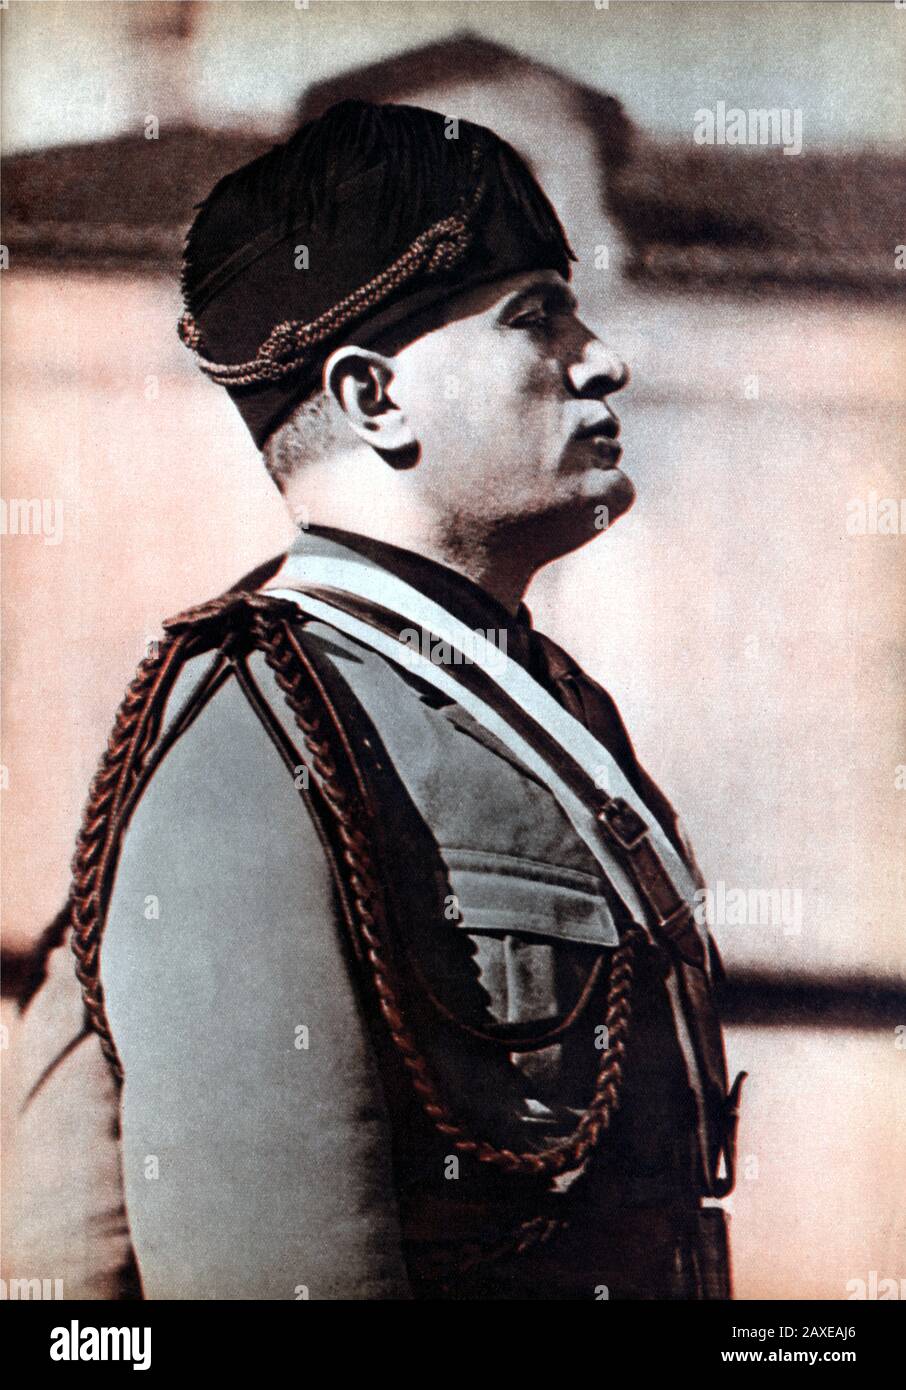 1926,  ITALY : The italian Fascist Duce BENITO MUSSOLINI ( Predappio, 29 july 1883 – Giulino di Mezzegra, 28 april 1945 )  in military uniform - ritratto - portrait  - POLITICA - POLITICO -  ITALIA - POLITIC - portrait - ITALY - FASCISMO - FASCISM - FASCISTA - ITALIA  - PRIMO MINISTRO - uniforme divisa militare ---  Archivio GBB Stock Photo